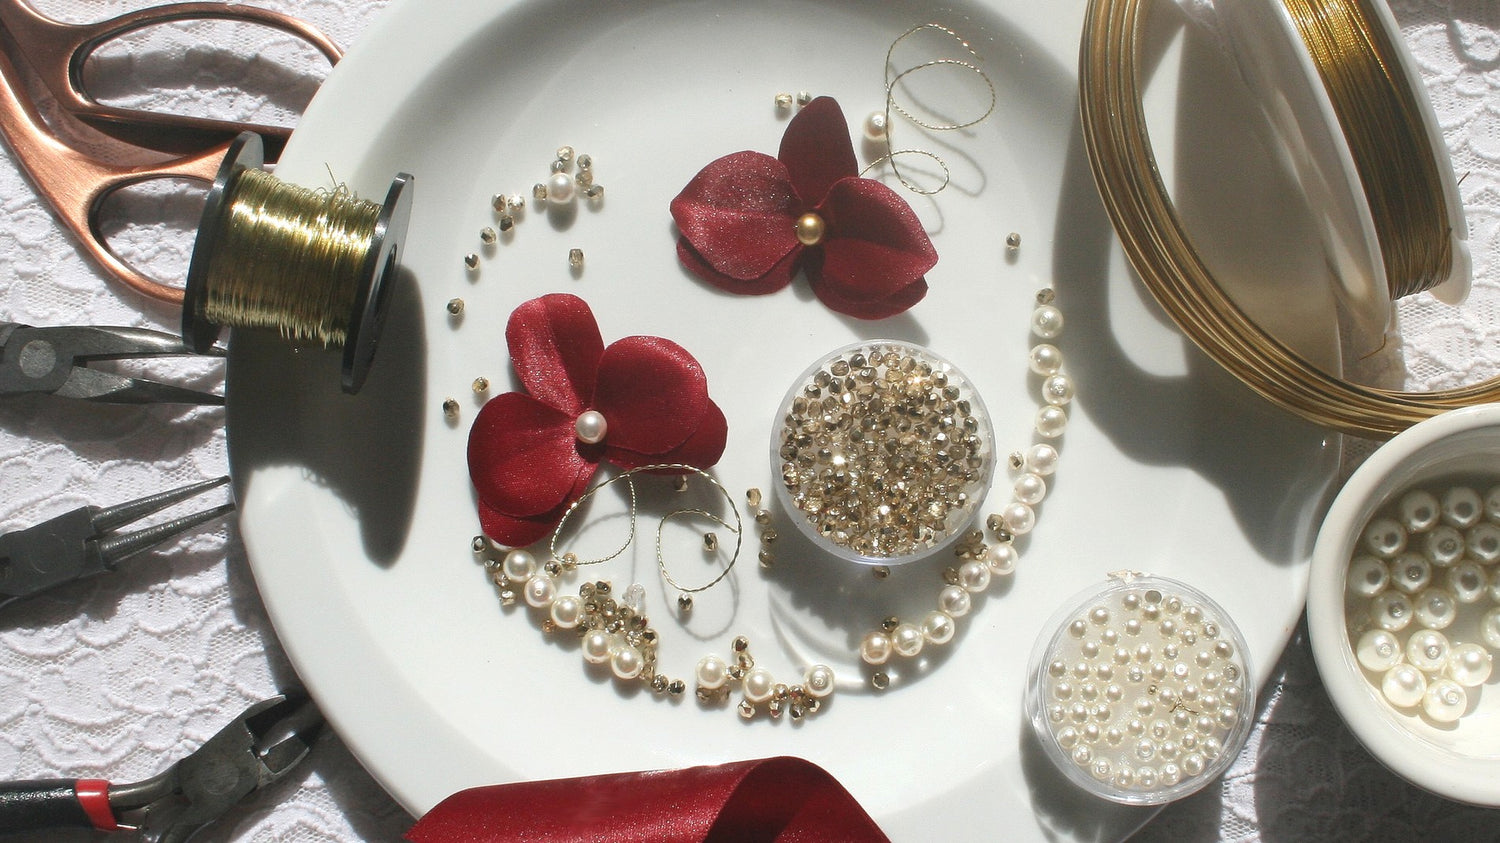 Création d'orchidées en satin pour la confection de bijoux de mariage sur mesure